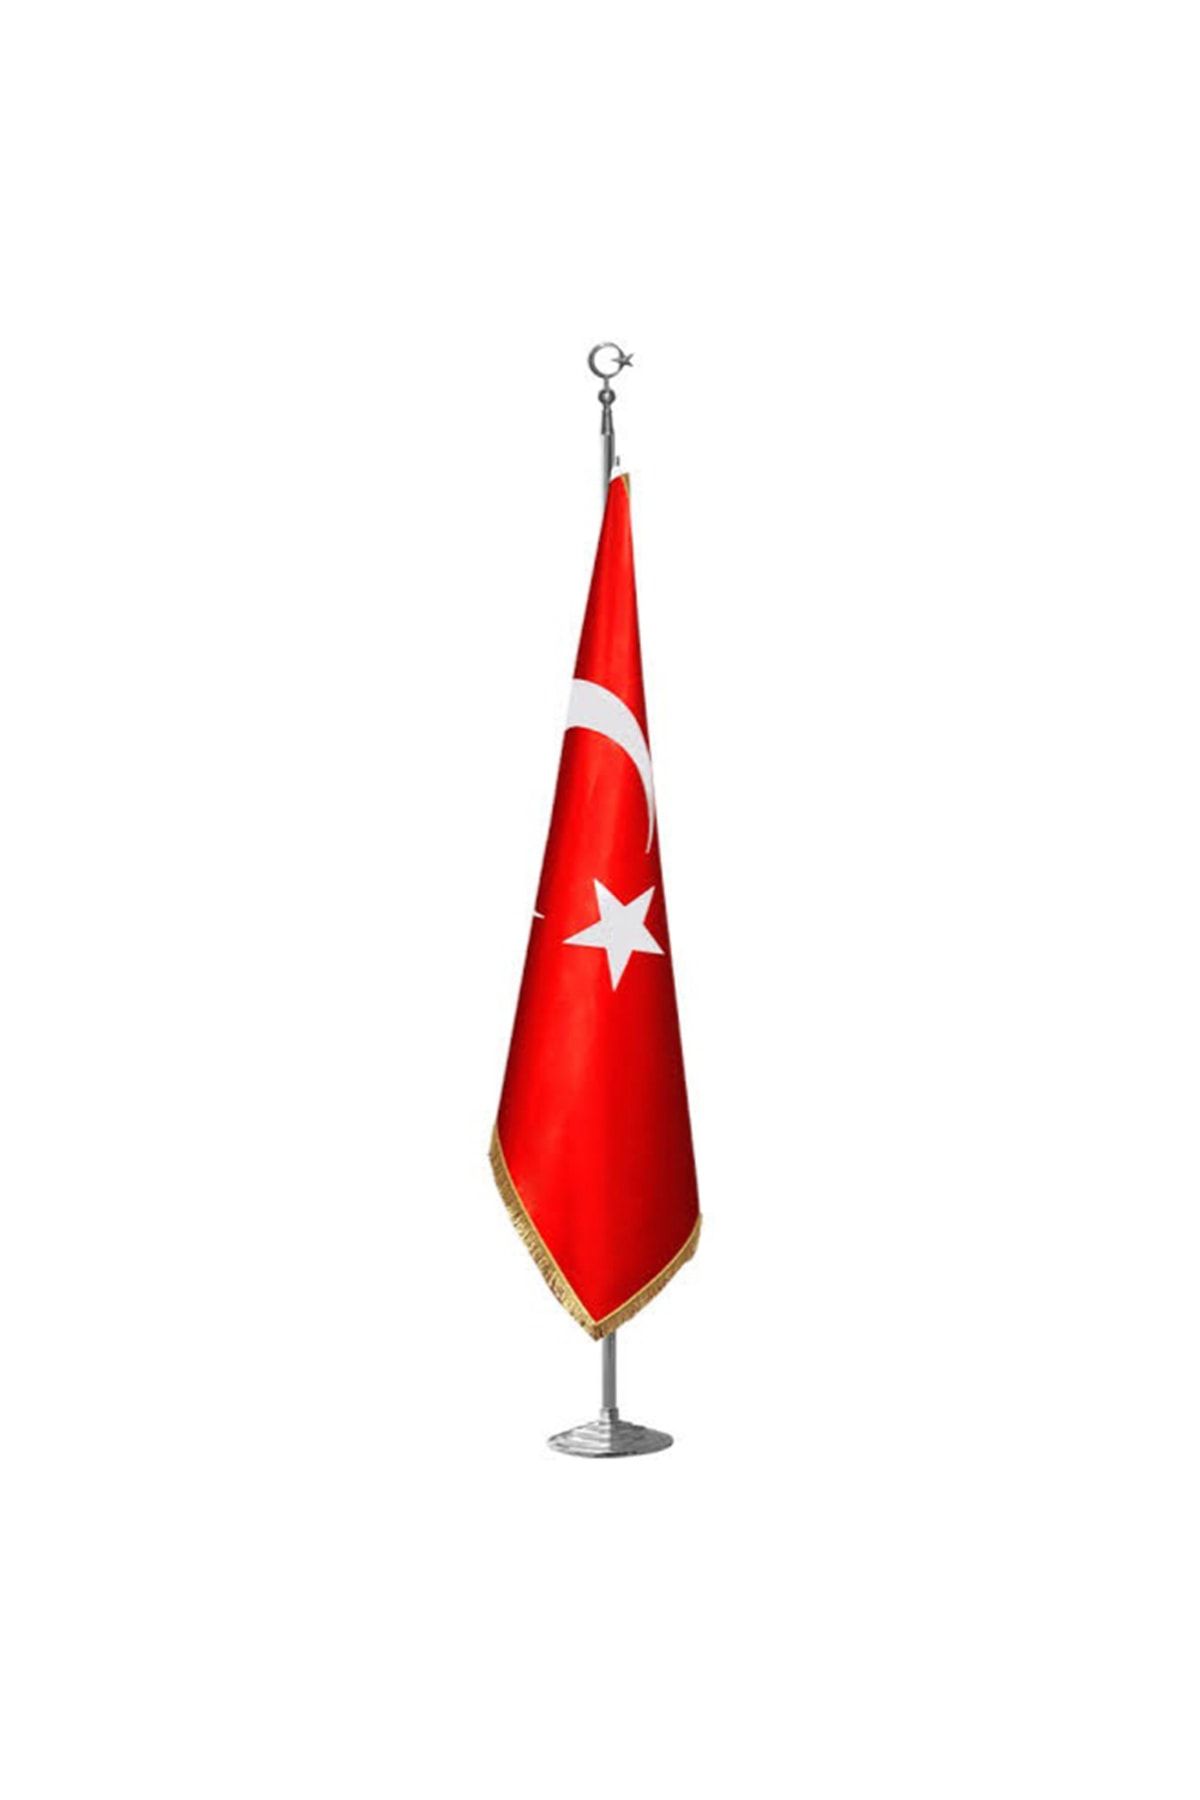 ZC Bayrak Türk Makam Bayrağı Krom Kaplı Direk Ve Simli Bayrak Seti